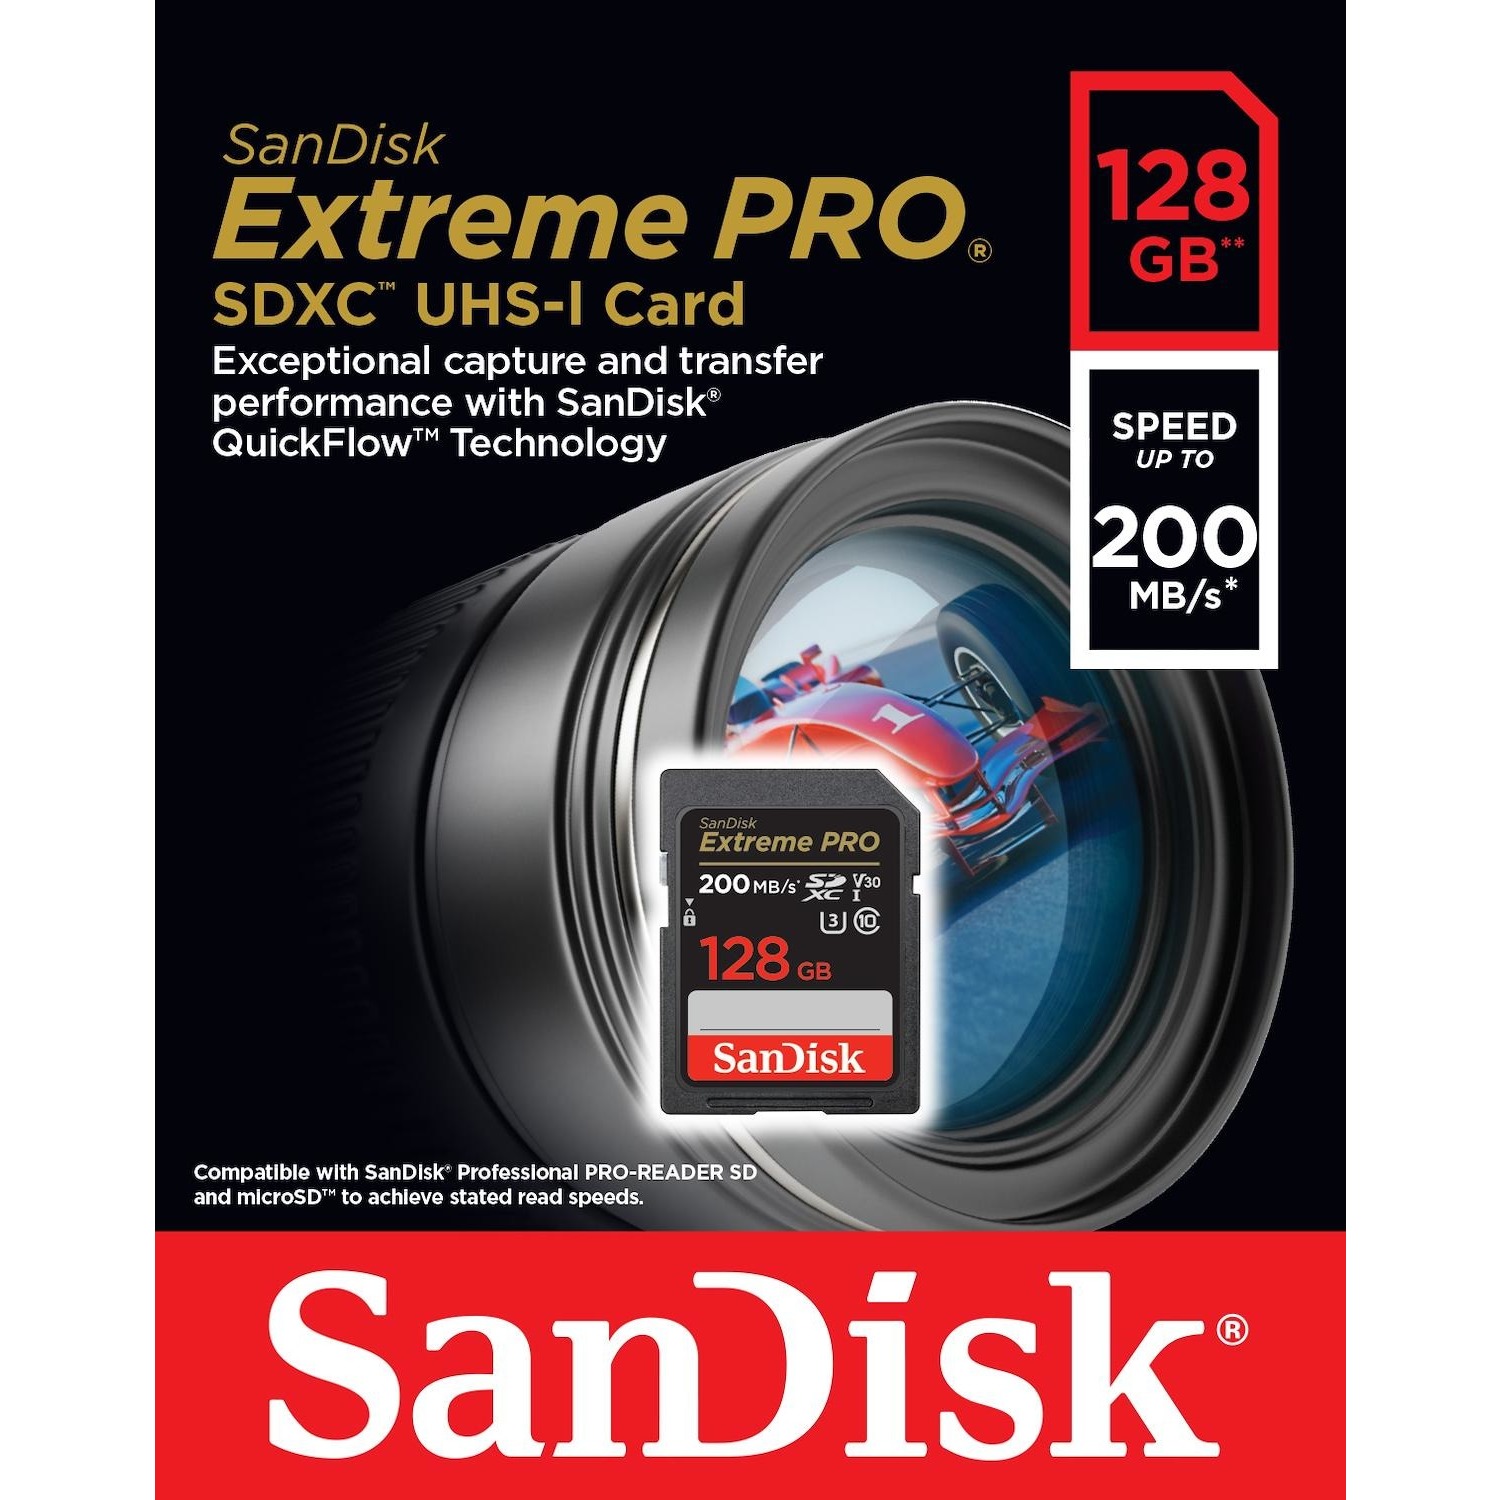 Immagine per SD San Disk 128GB Extreme Pro XC da DIMOStore